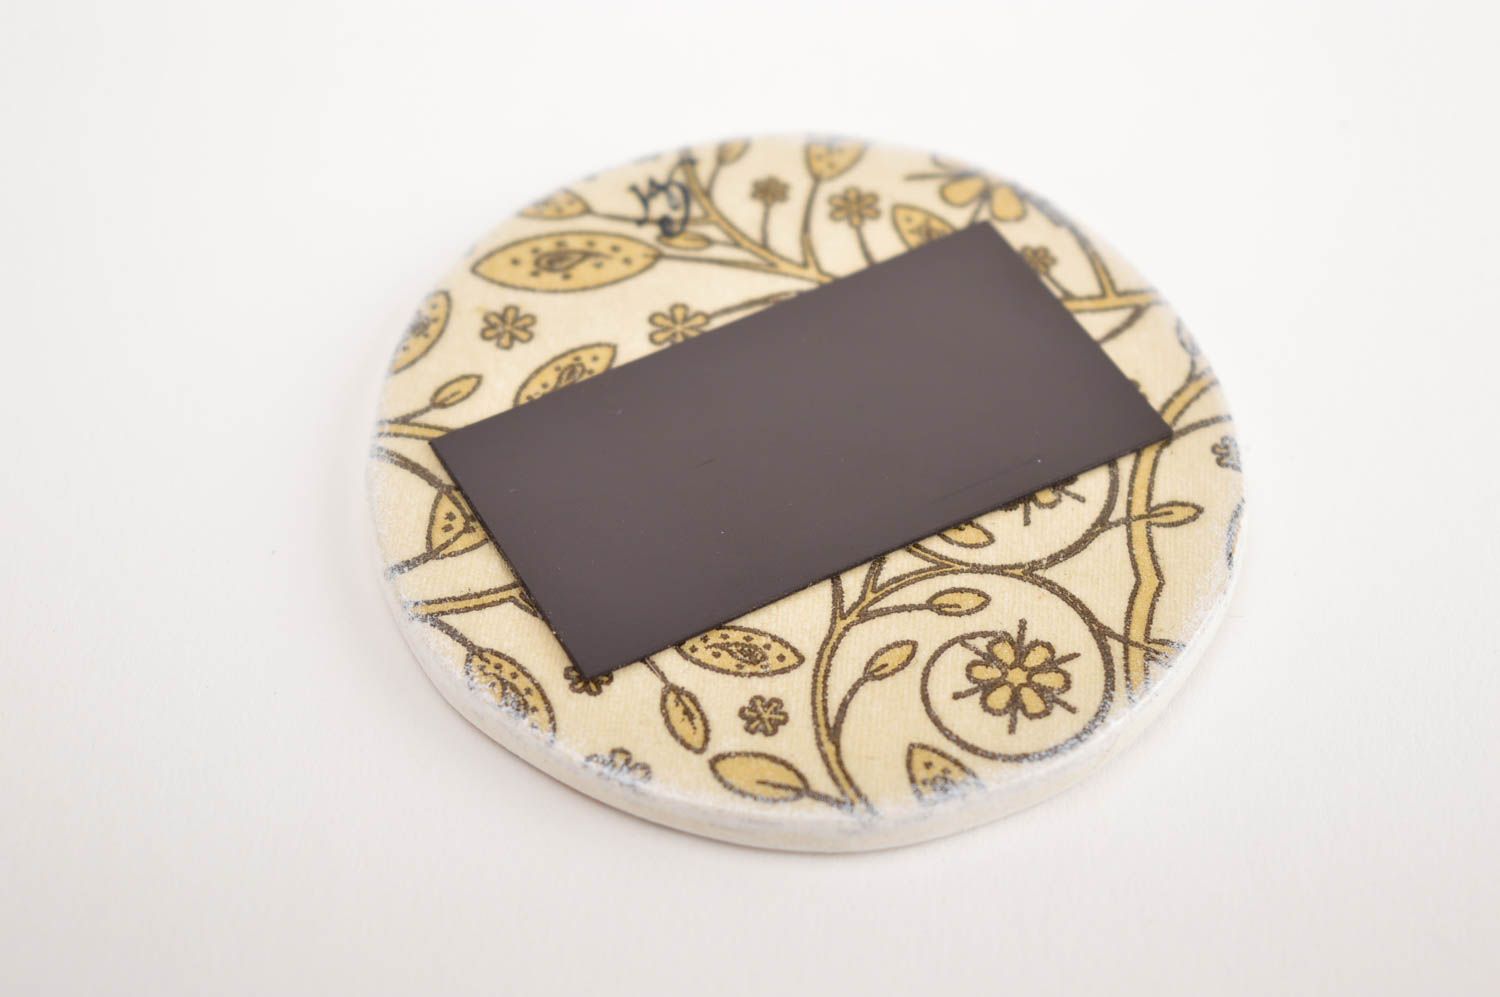 Handmade Kühlschrank Magnet ausgefallenes Geschenk Deko Idee Haus Sonnenblumen foto 4